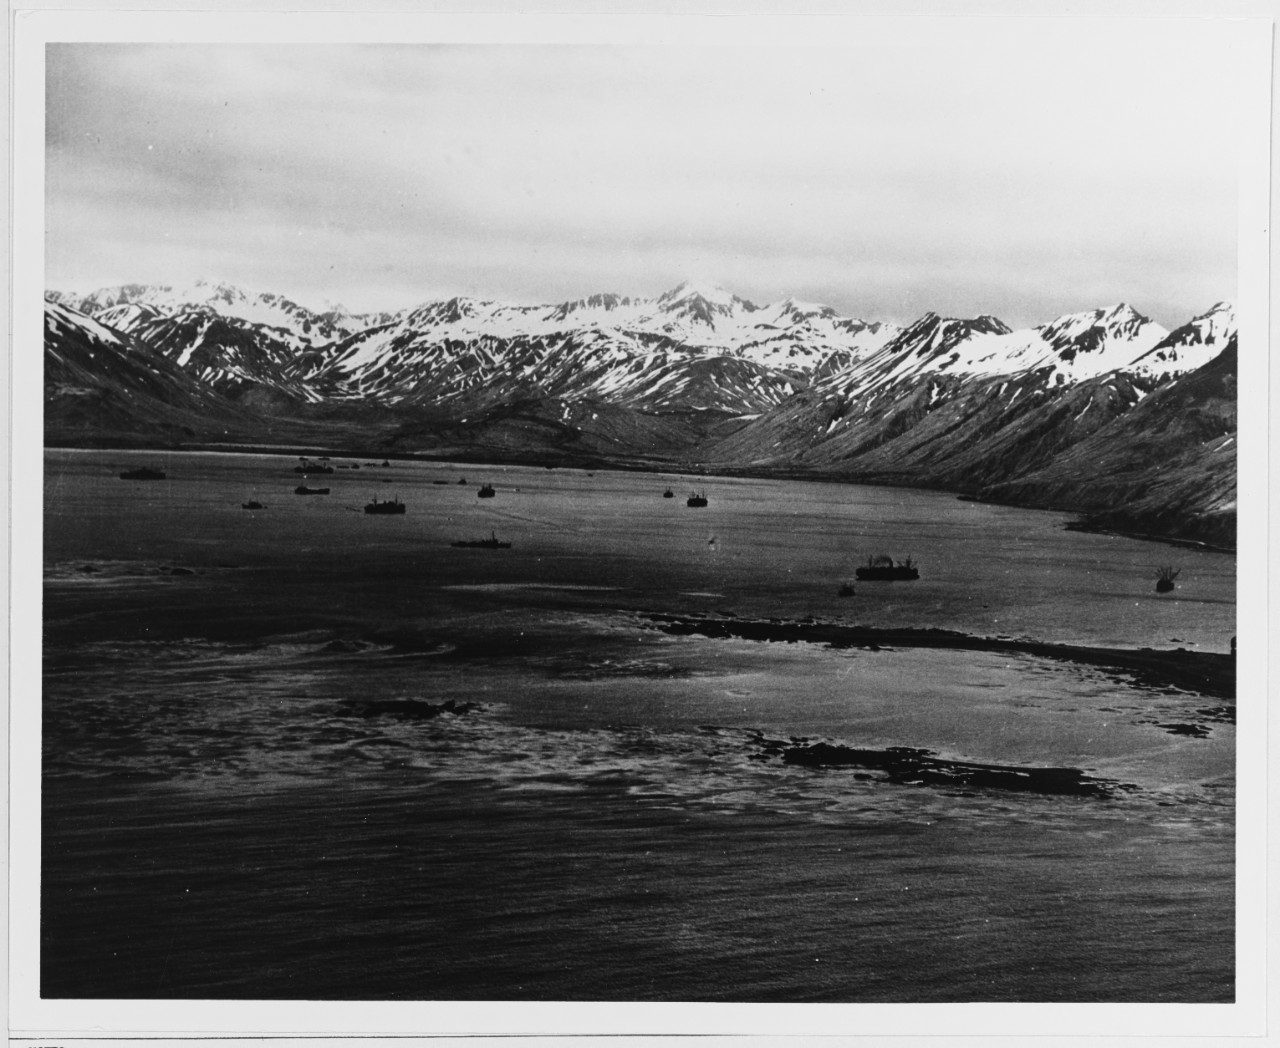 Ships at Massacre Bay, Aleutians, May 1943